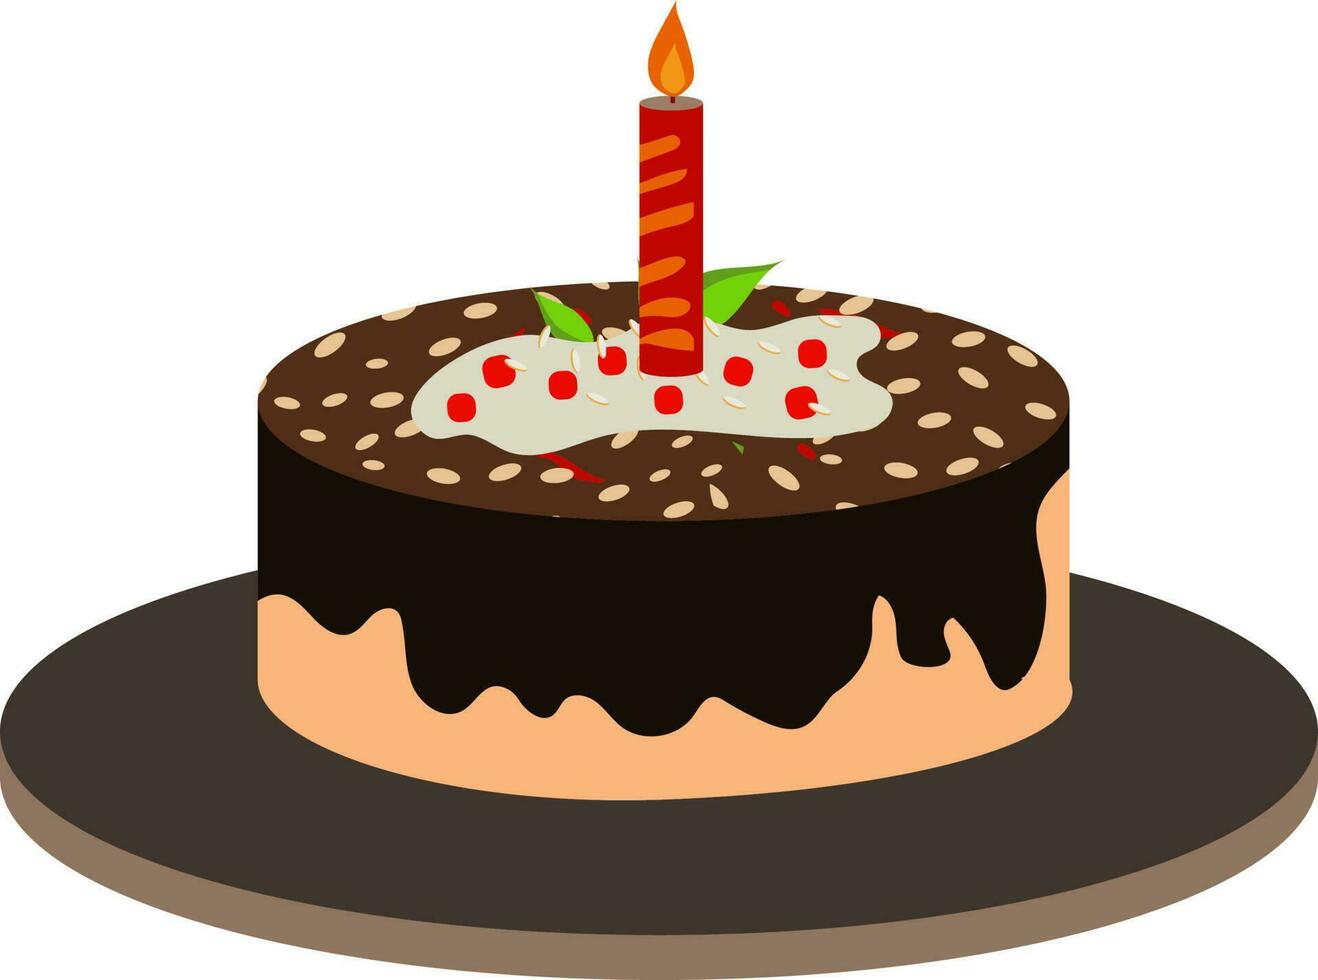 dekorativ Kuchen mit zündete Kerze Symbol auf schwarz Platte. vektor